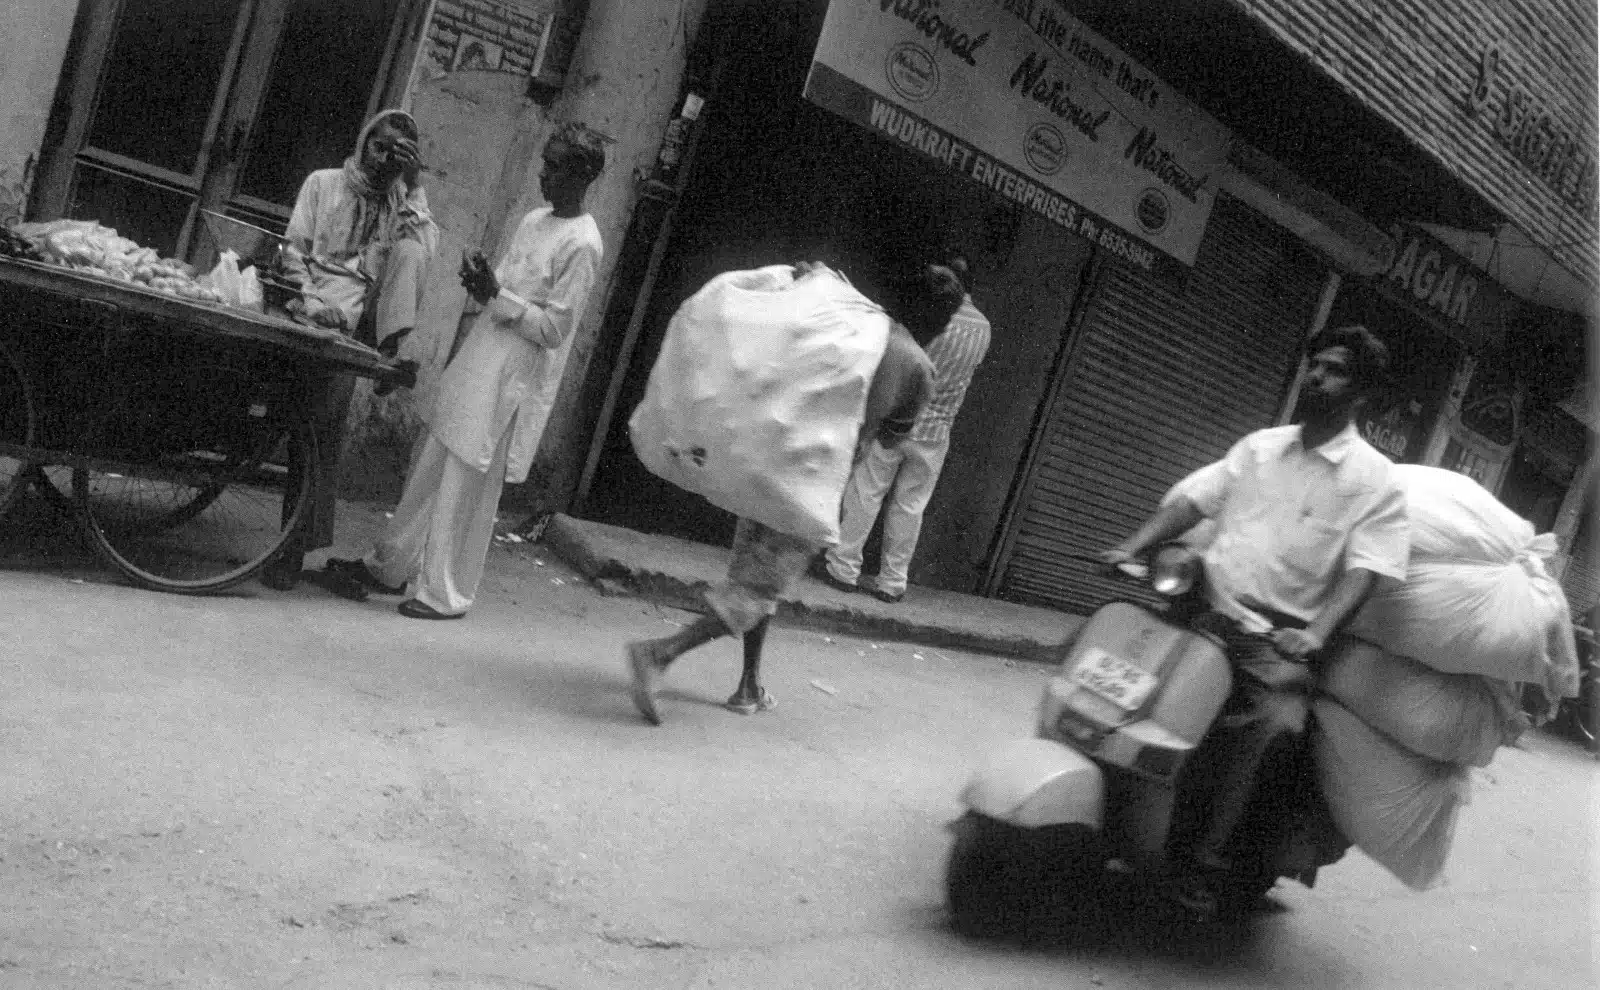 Fotografía en blanco y negro de una calle de nueva delhi en la India. Motocicleta repartiendo sacos